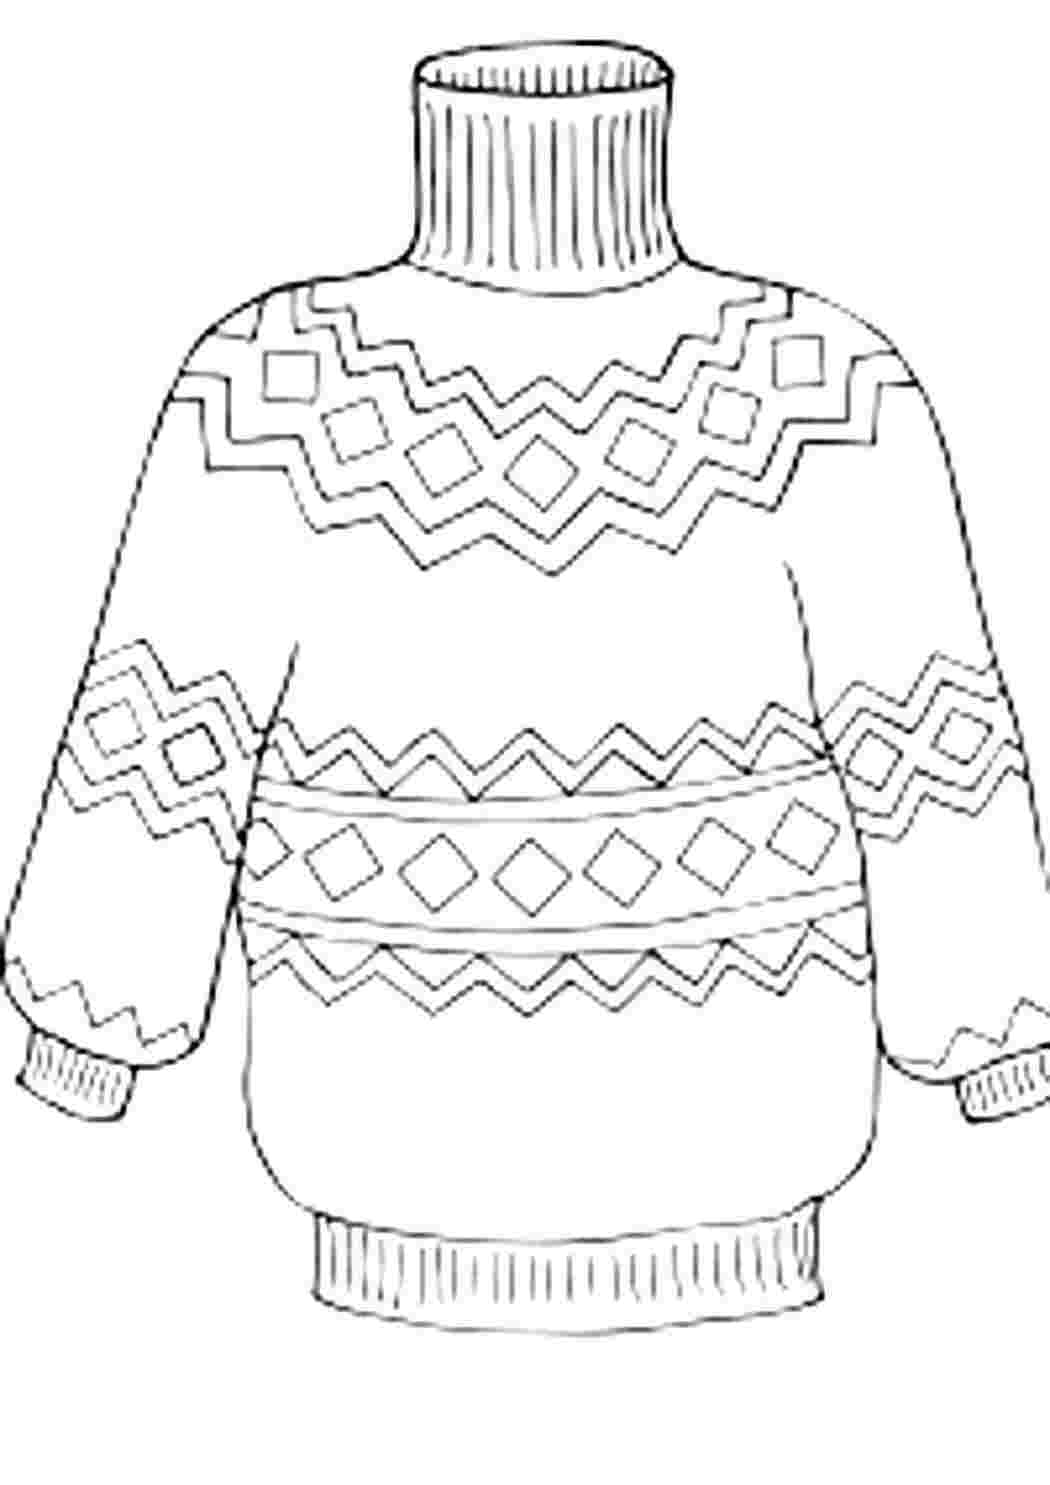 детские раскраски раскраски одежда раскраска свитер. Хорошие раскраски.